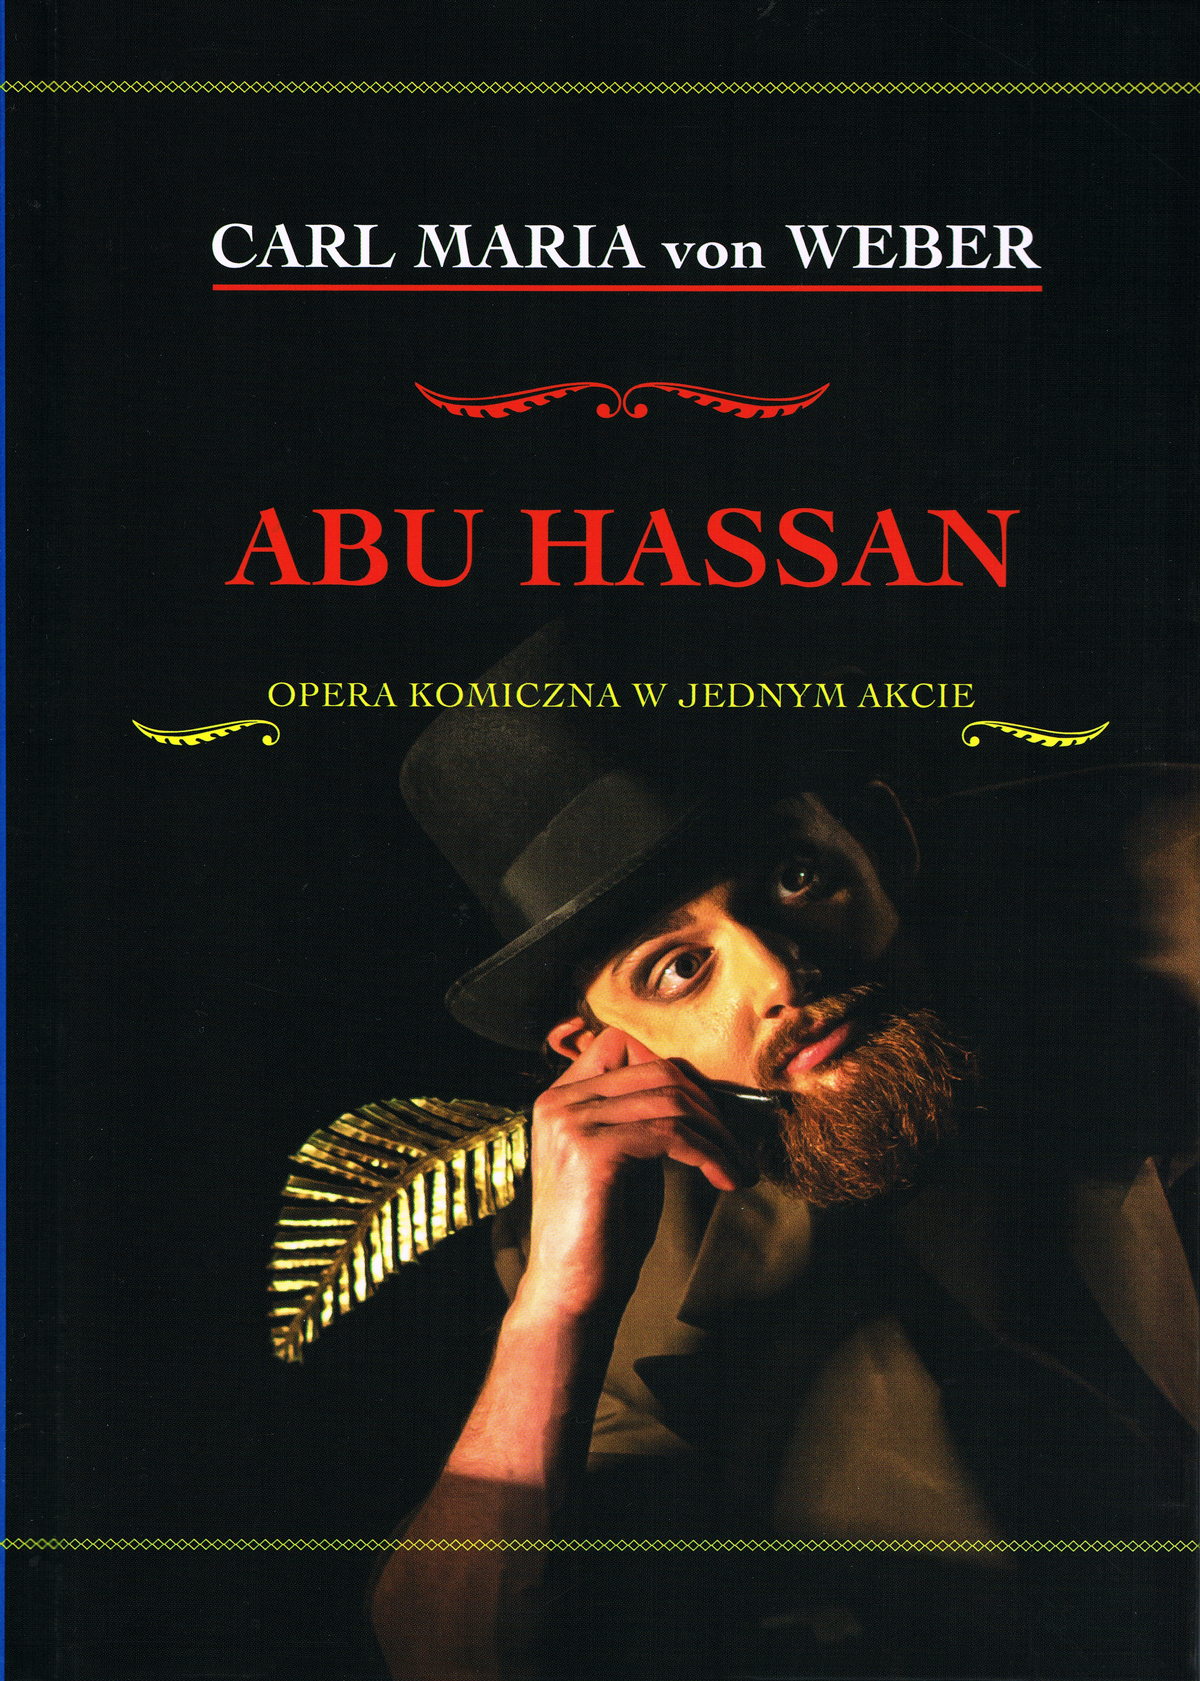 CARL MARIA von WEBER – Abu Hassan. Opera komiczna w jednym akcie